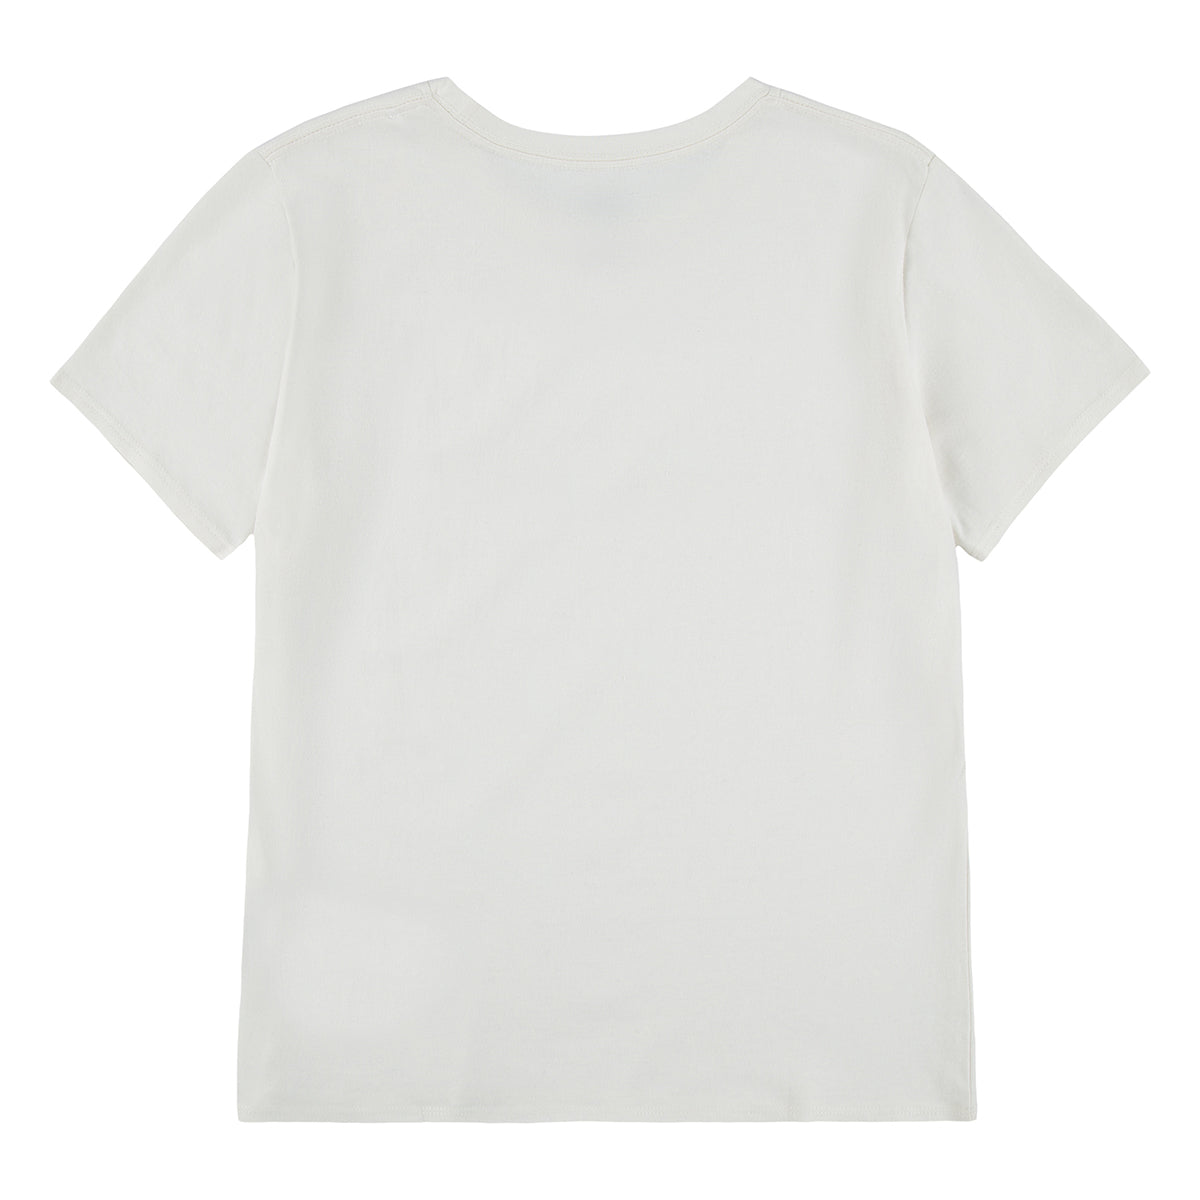 חולצת טי שרט LEVI'S לוגו פרחוני לילדות